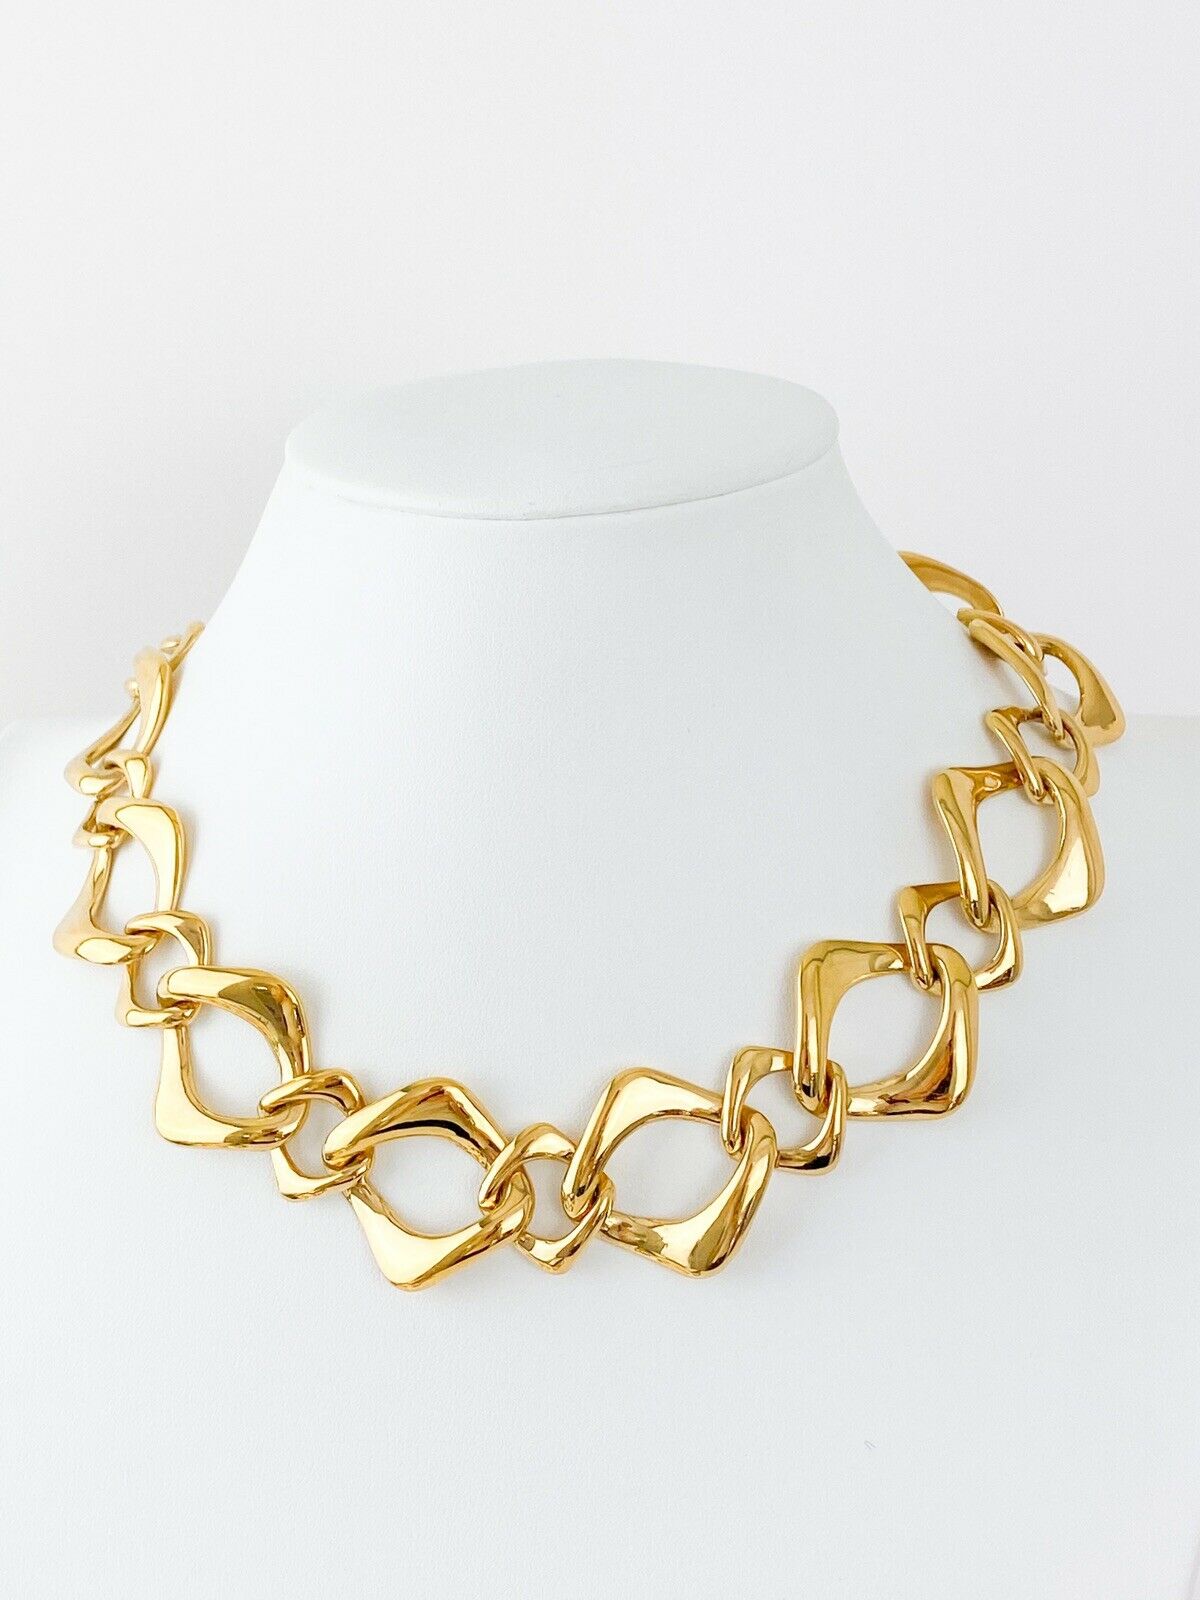 Yves Saint Laurent  link necklace 